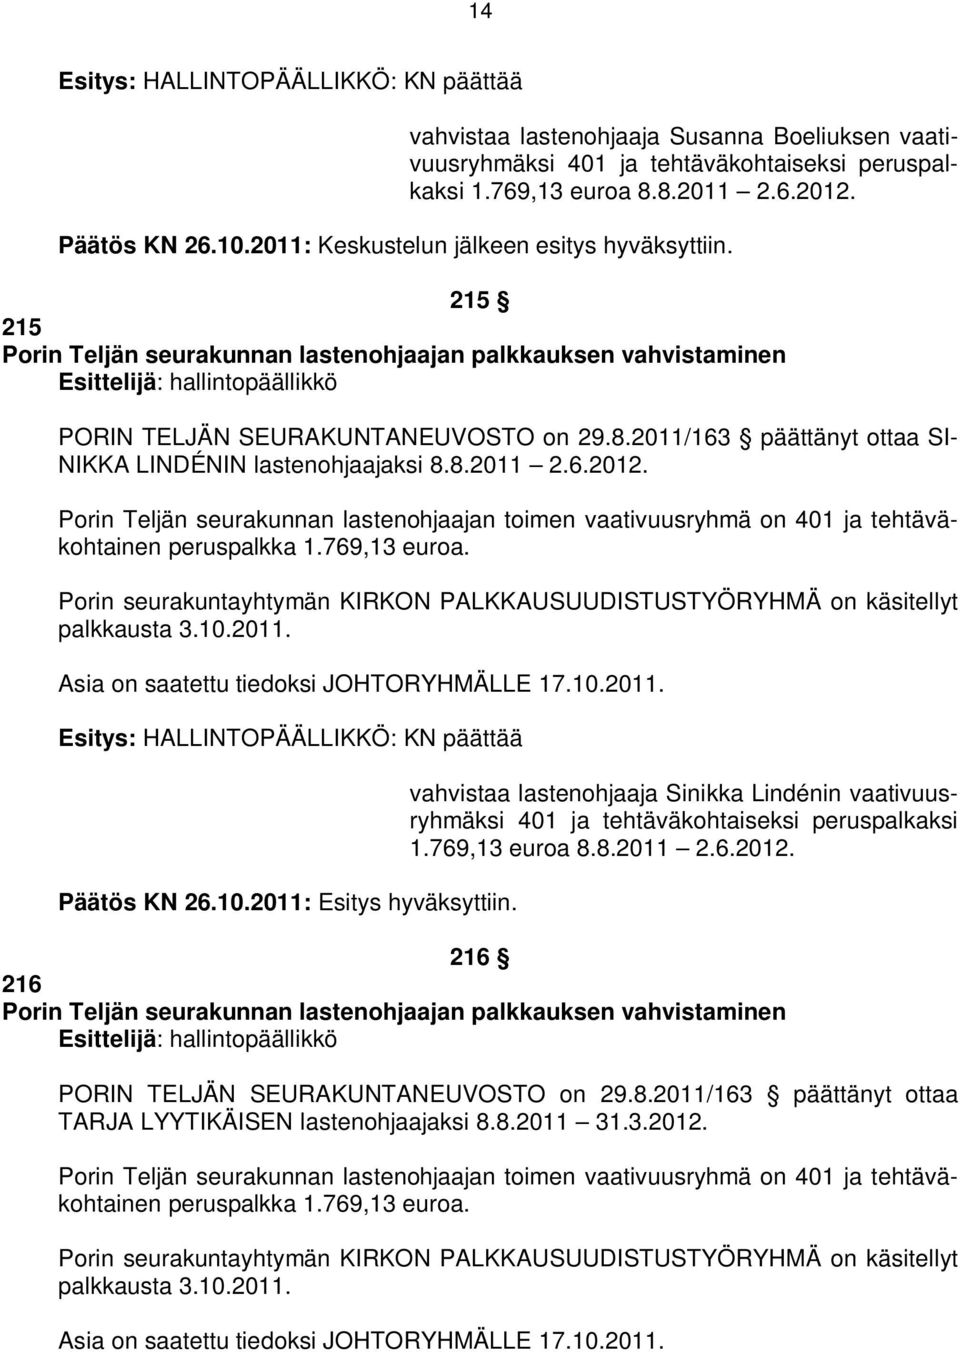 2011/163 päättänyt ottaa SI- NIKKA LINDÉNIN lastenohjaajaksi 8.8.2011 2.6.2012. Porin Teljän seurakunnan lastenohjaajan toimen vaativuusryhmä on 401 ja tehtäväkohtainen peruspalkka 1.769,13 euroa.